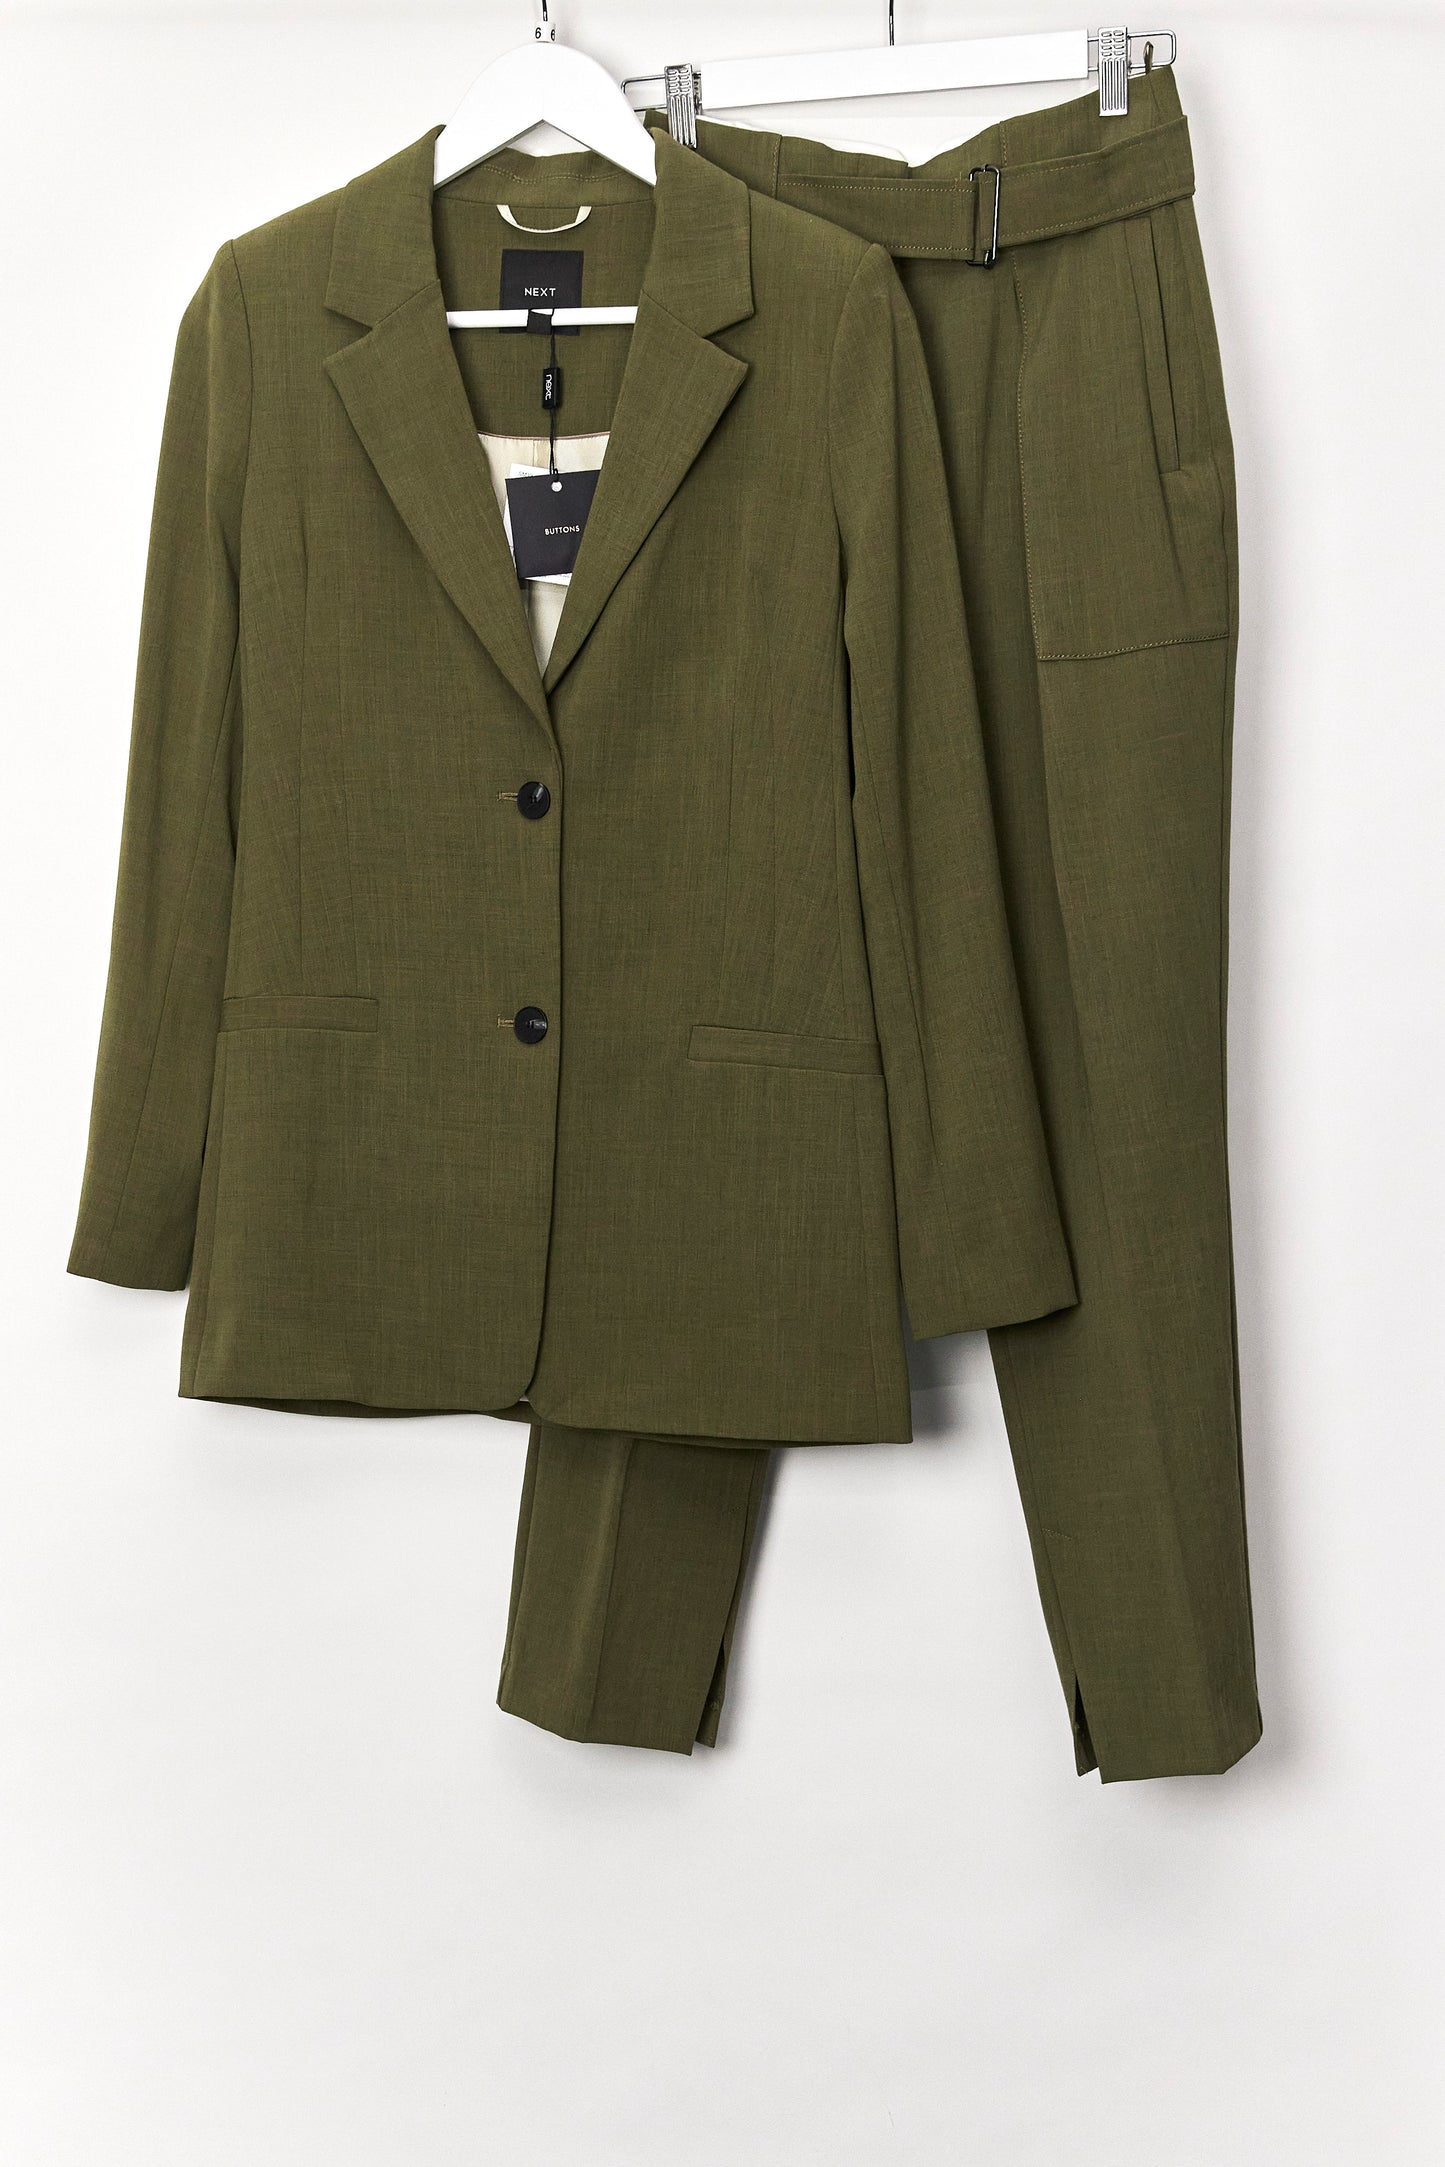 Womens Next Petite Green Suit Blazer part of suit size 6